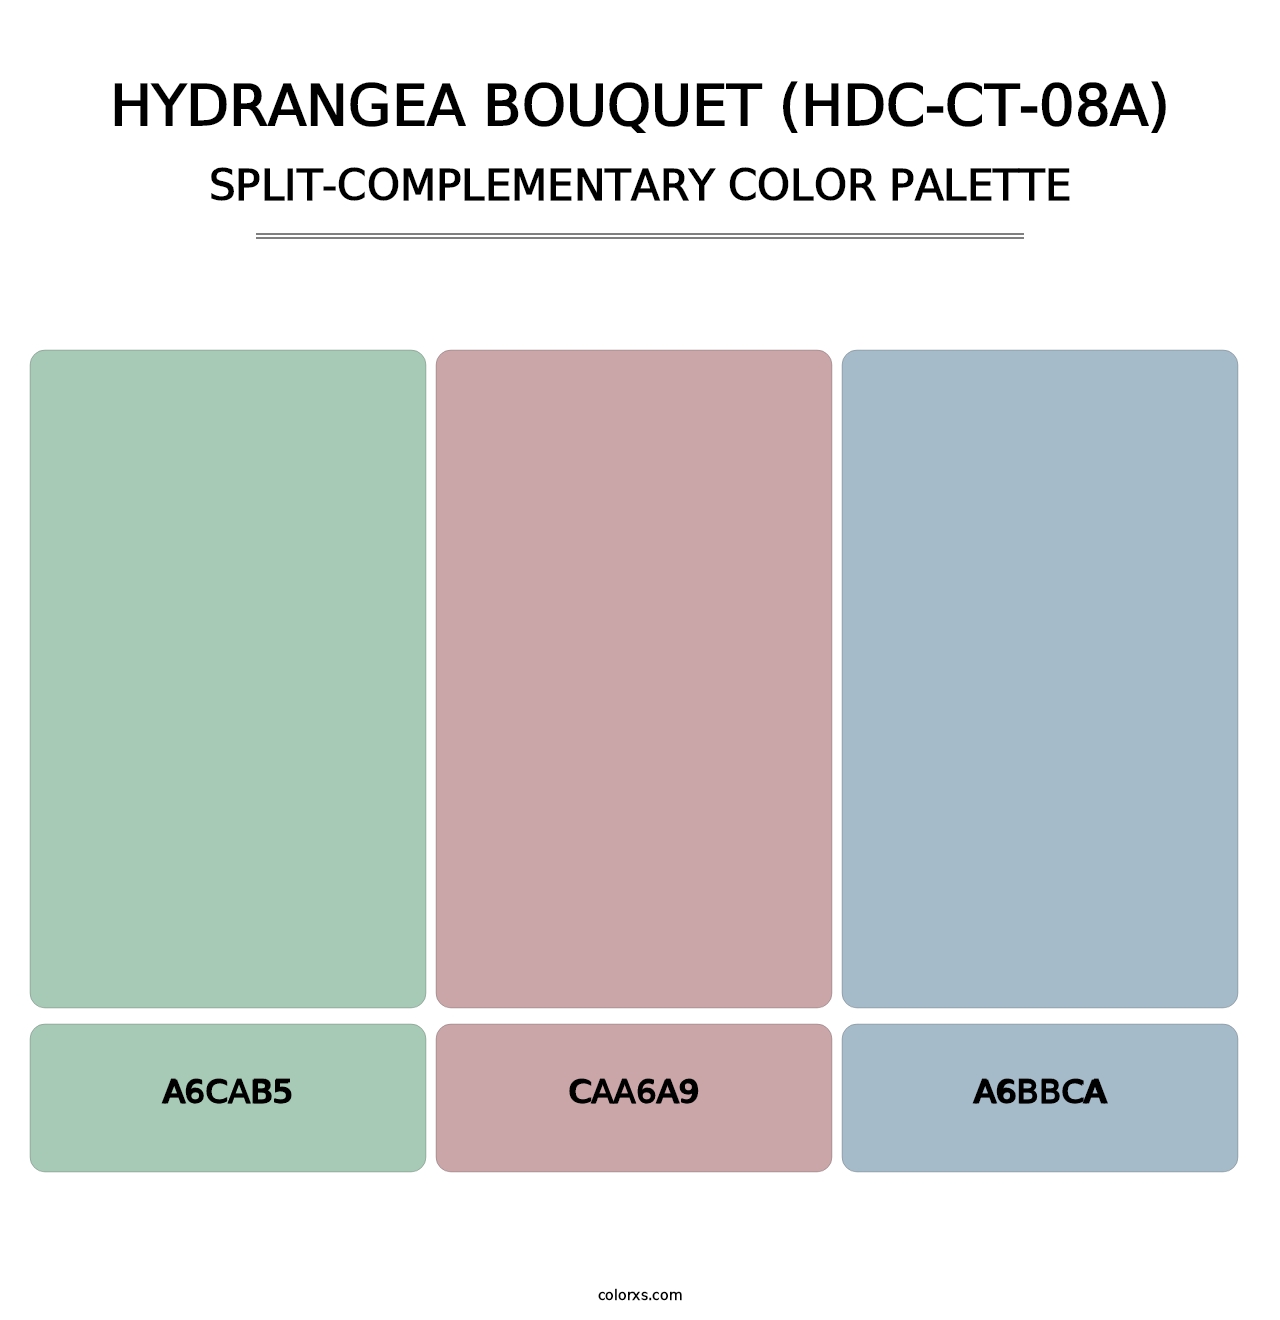 Hydrangea Bouquet (HDC-CT-08A) - Split-Complementary Color Palette